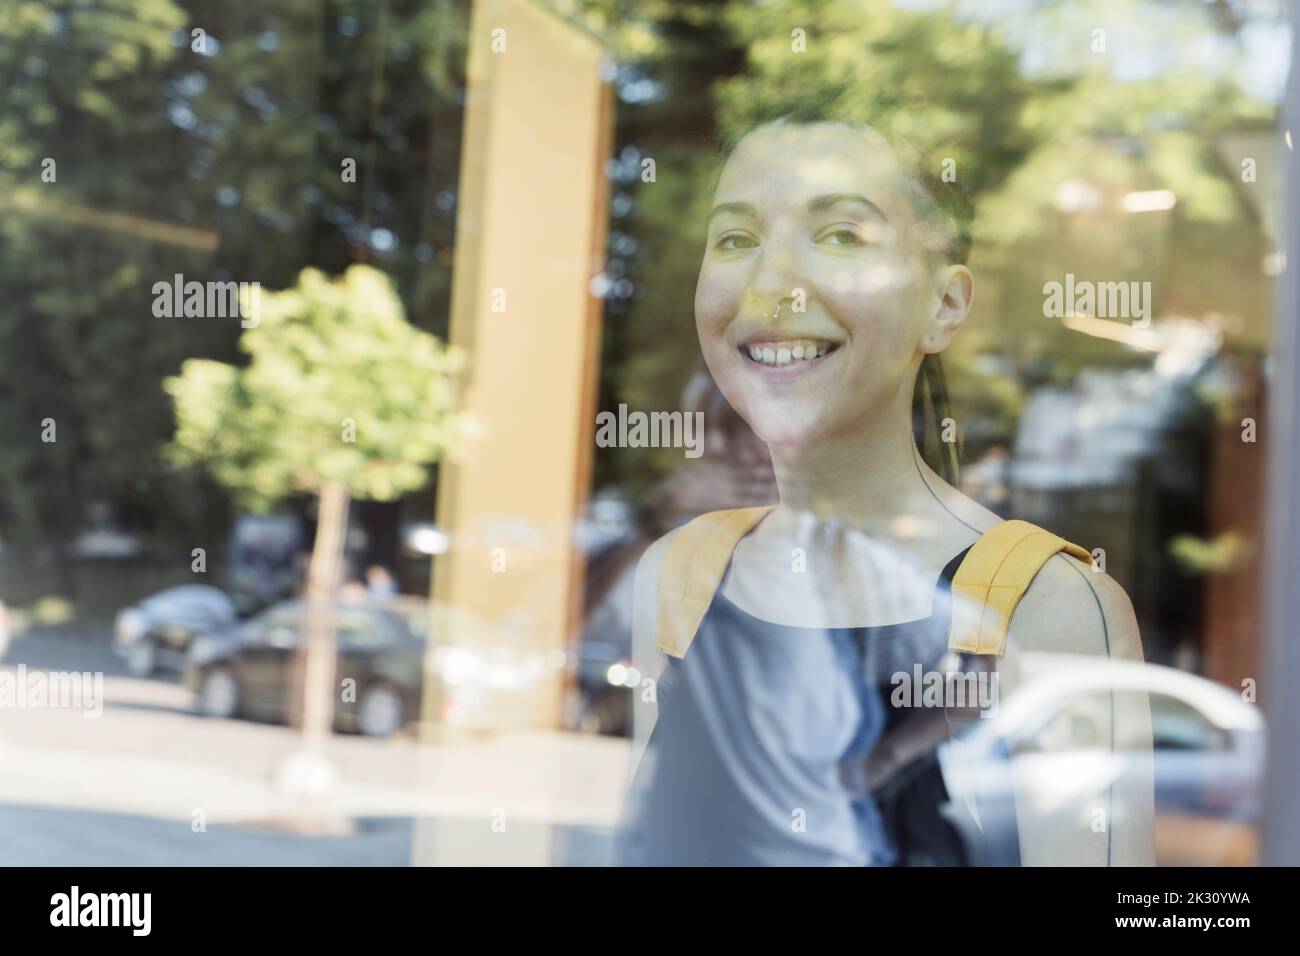 Smiling non-binary person seen through glass Stock Photo